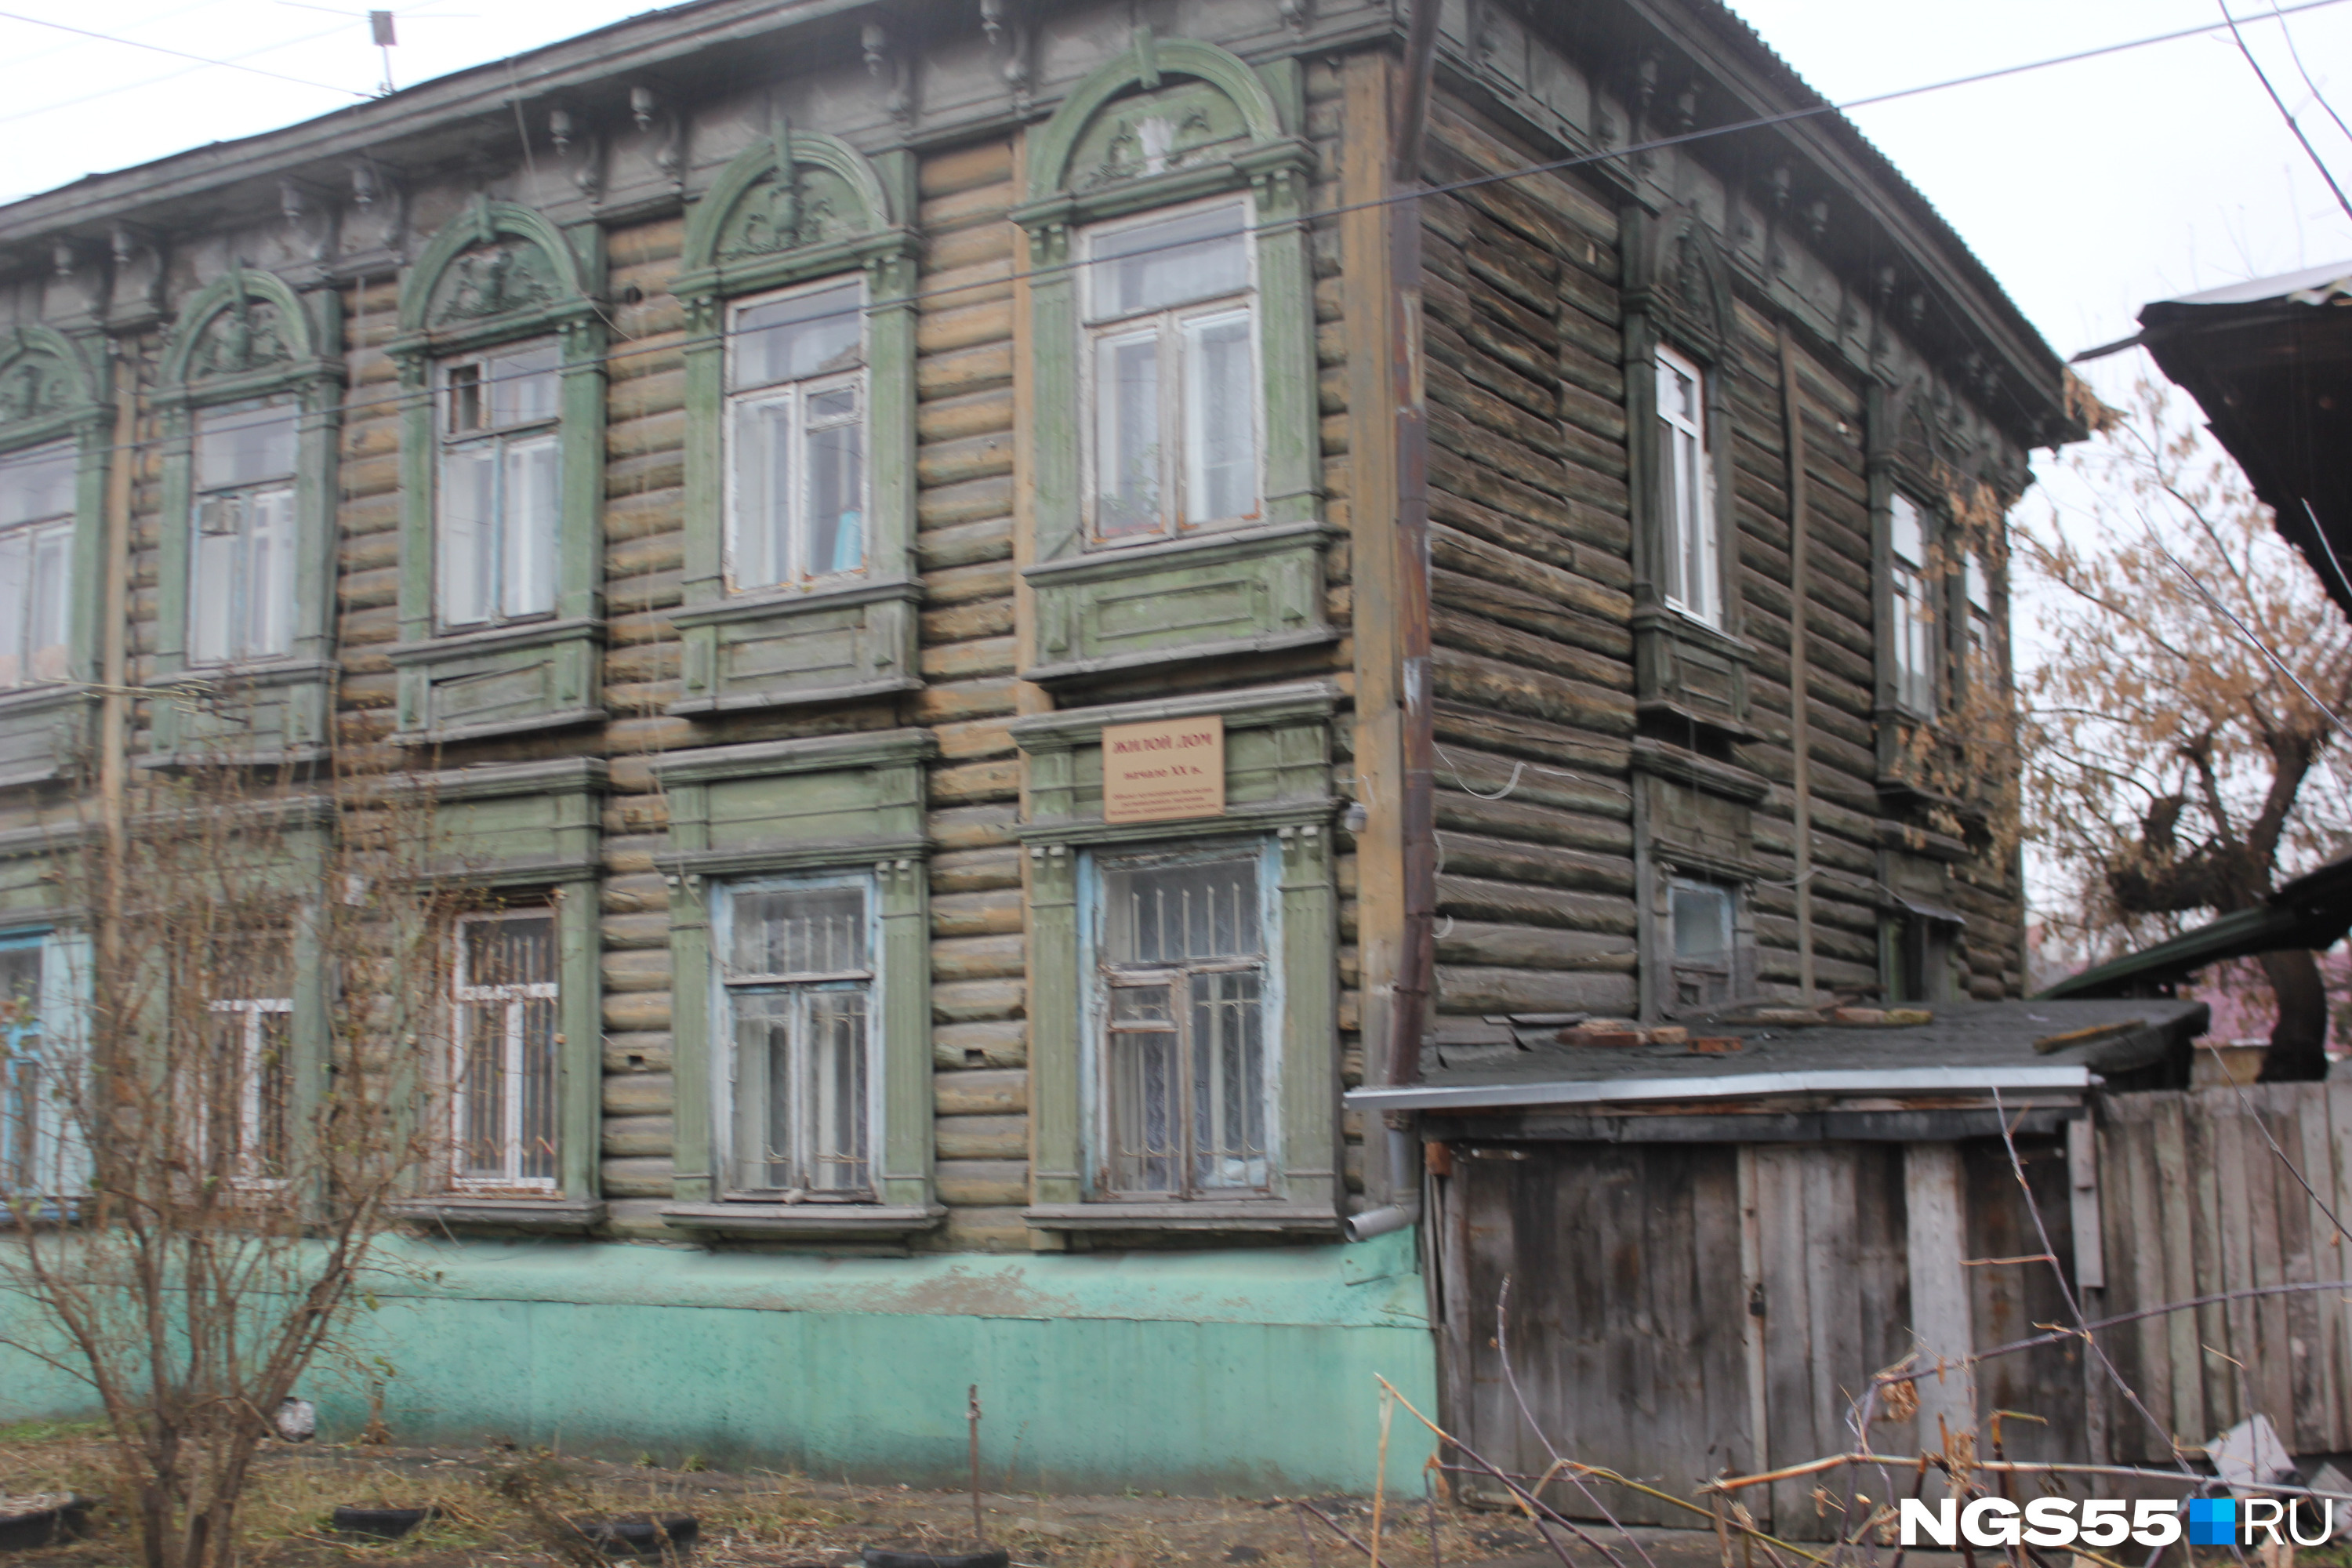 Ещё одно историческое здание на соседней улице Успенского